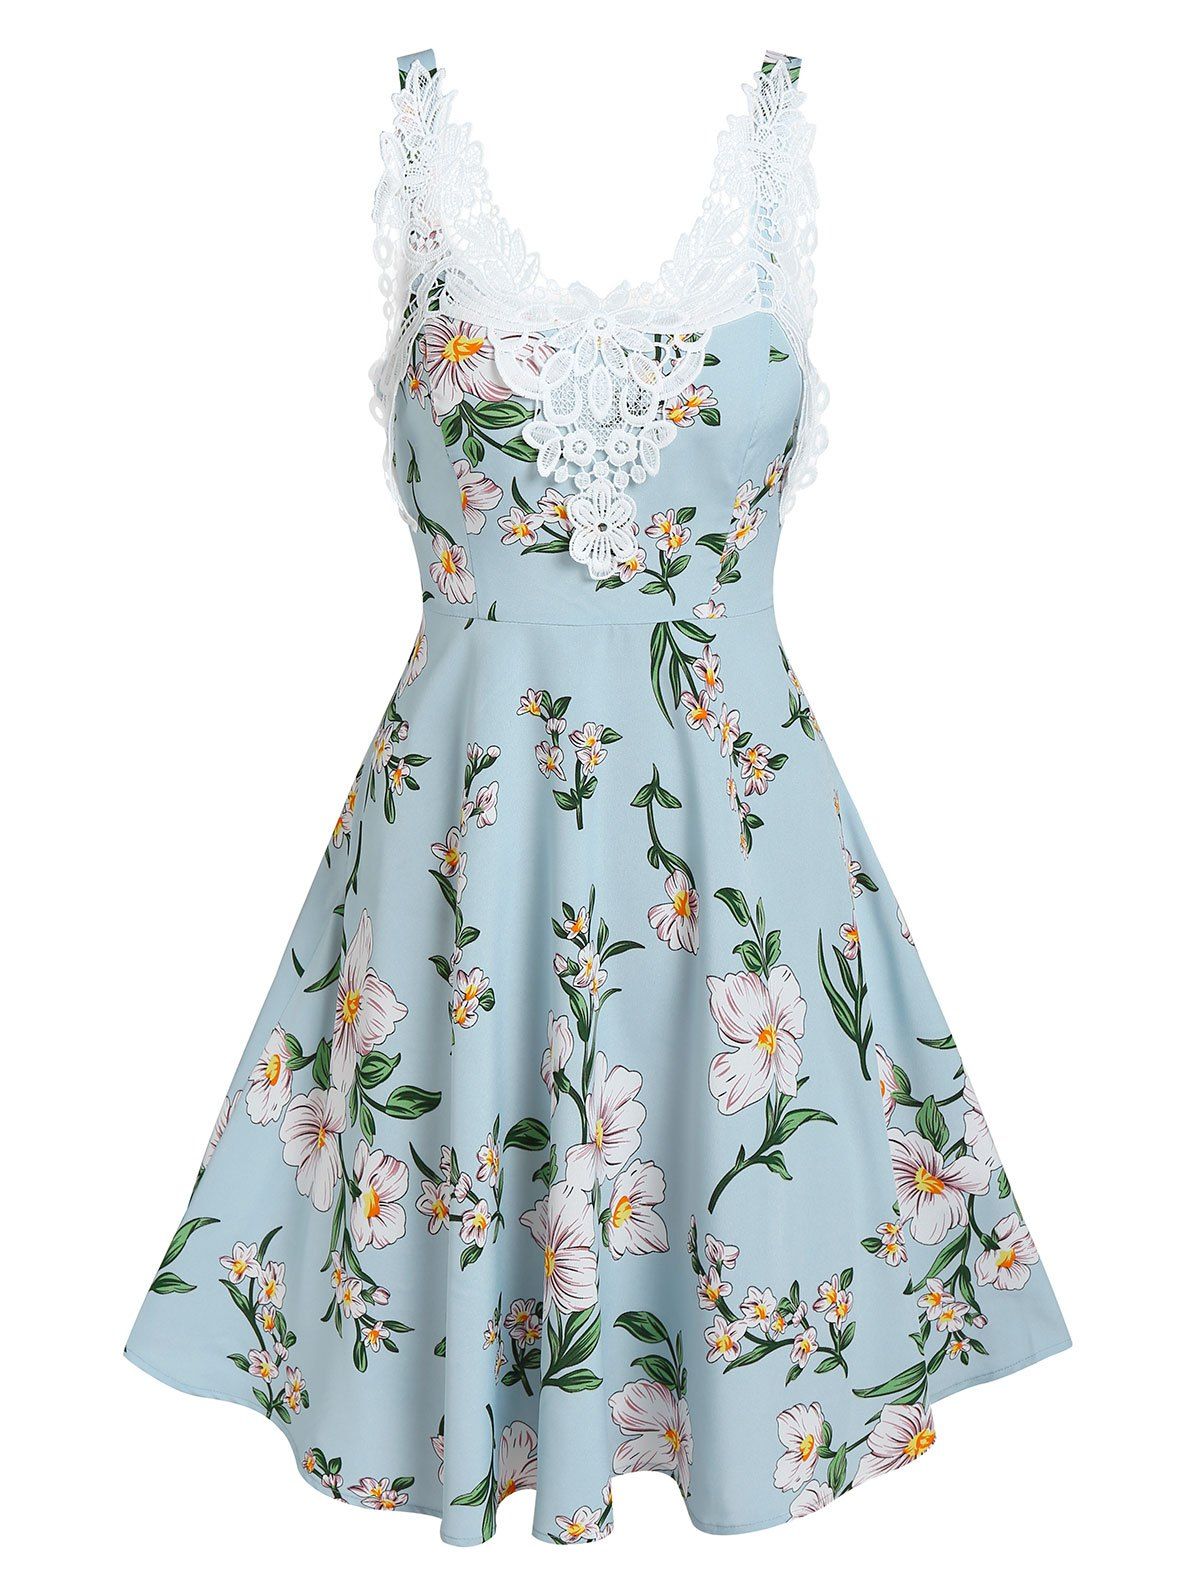 Flower Print Cottagecore A Line Dress Floral Crochet Lace Applique Sundress - LIGHT BLUE XXXL